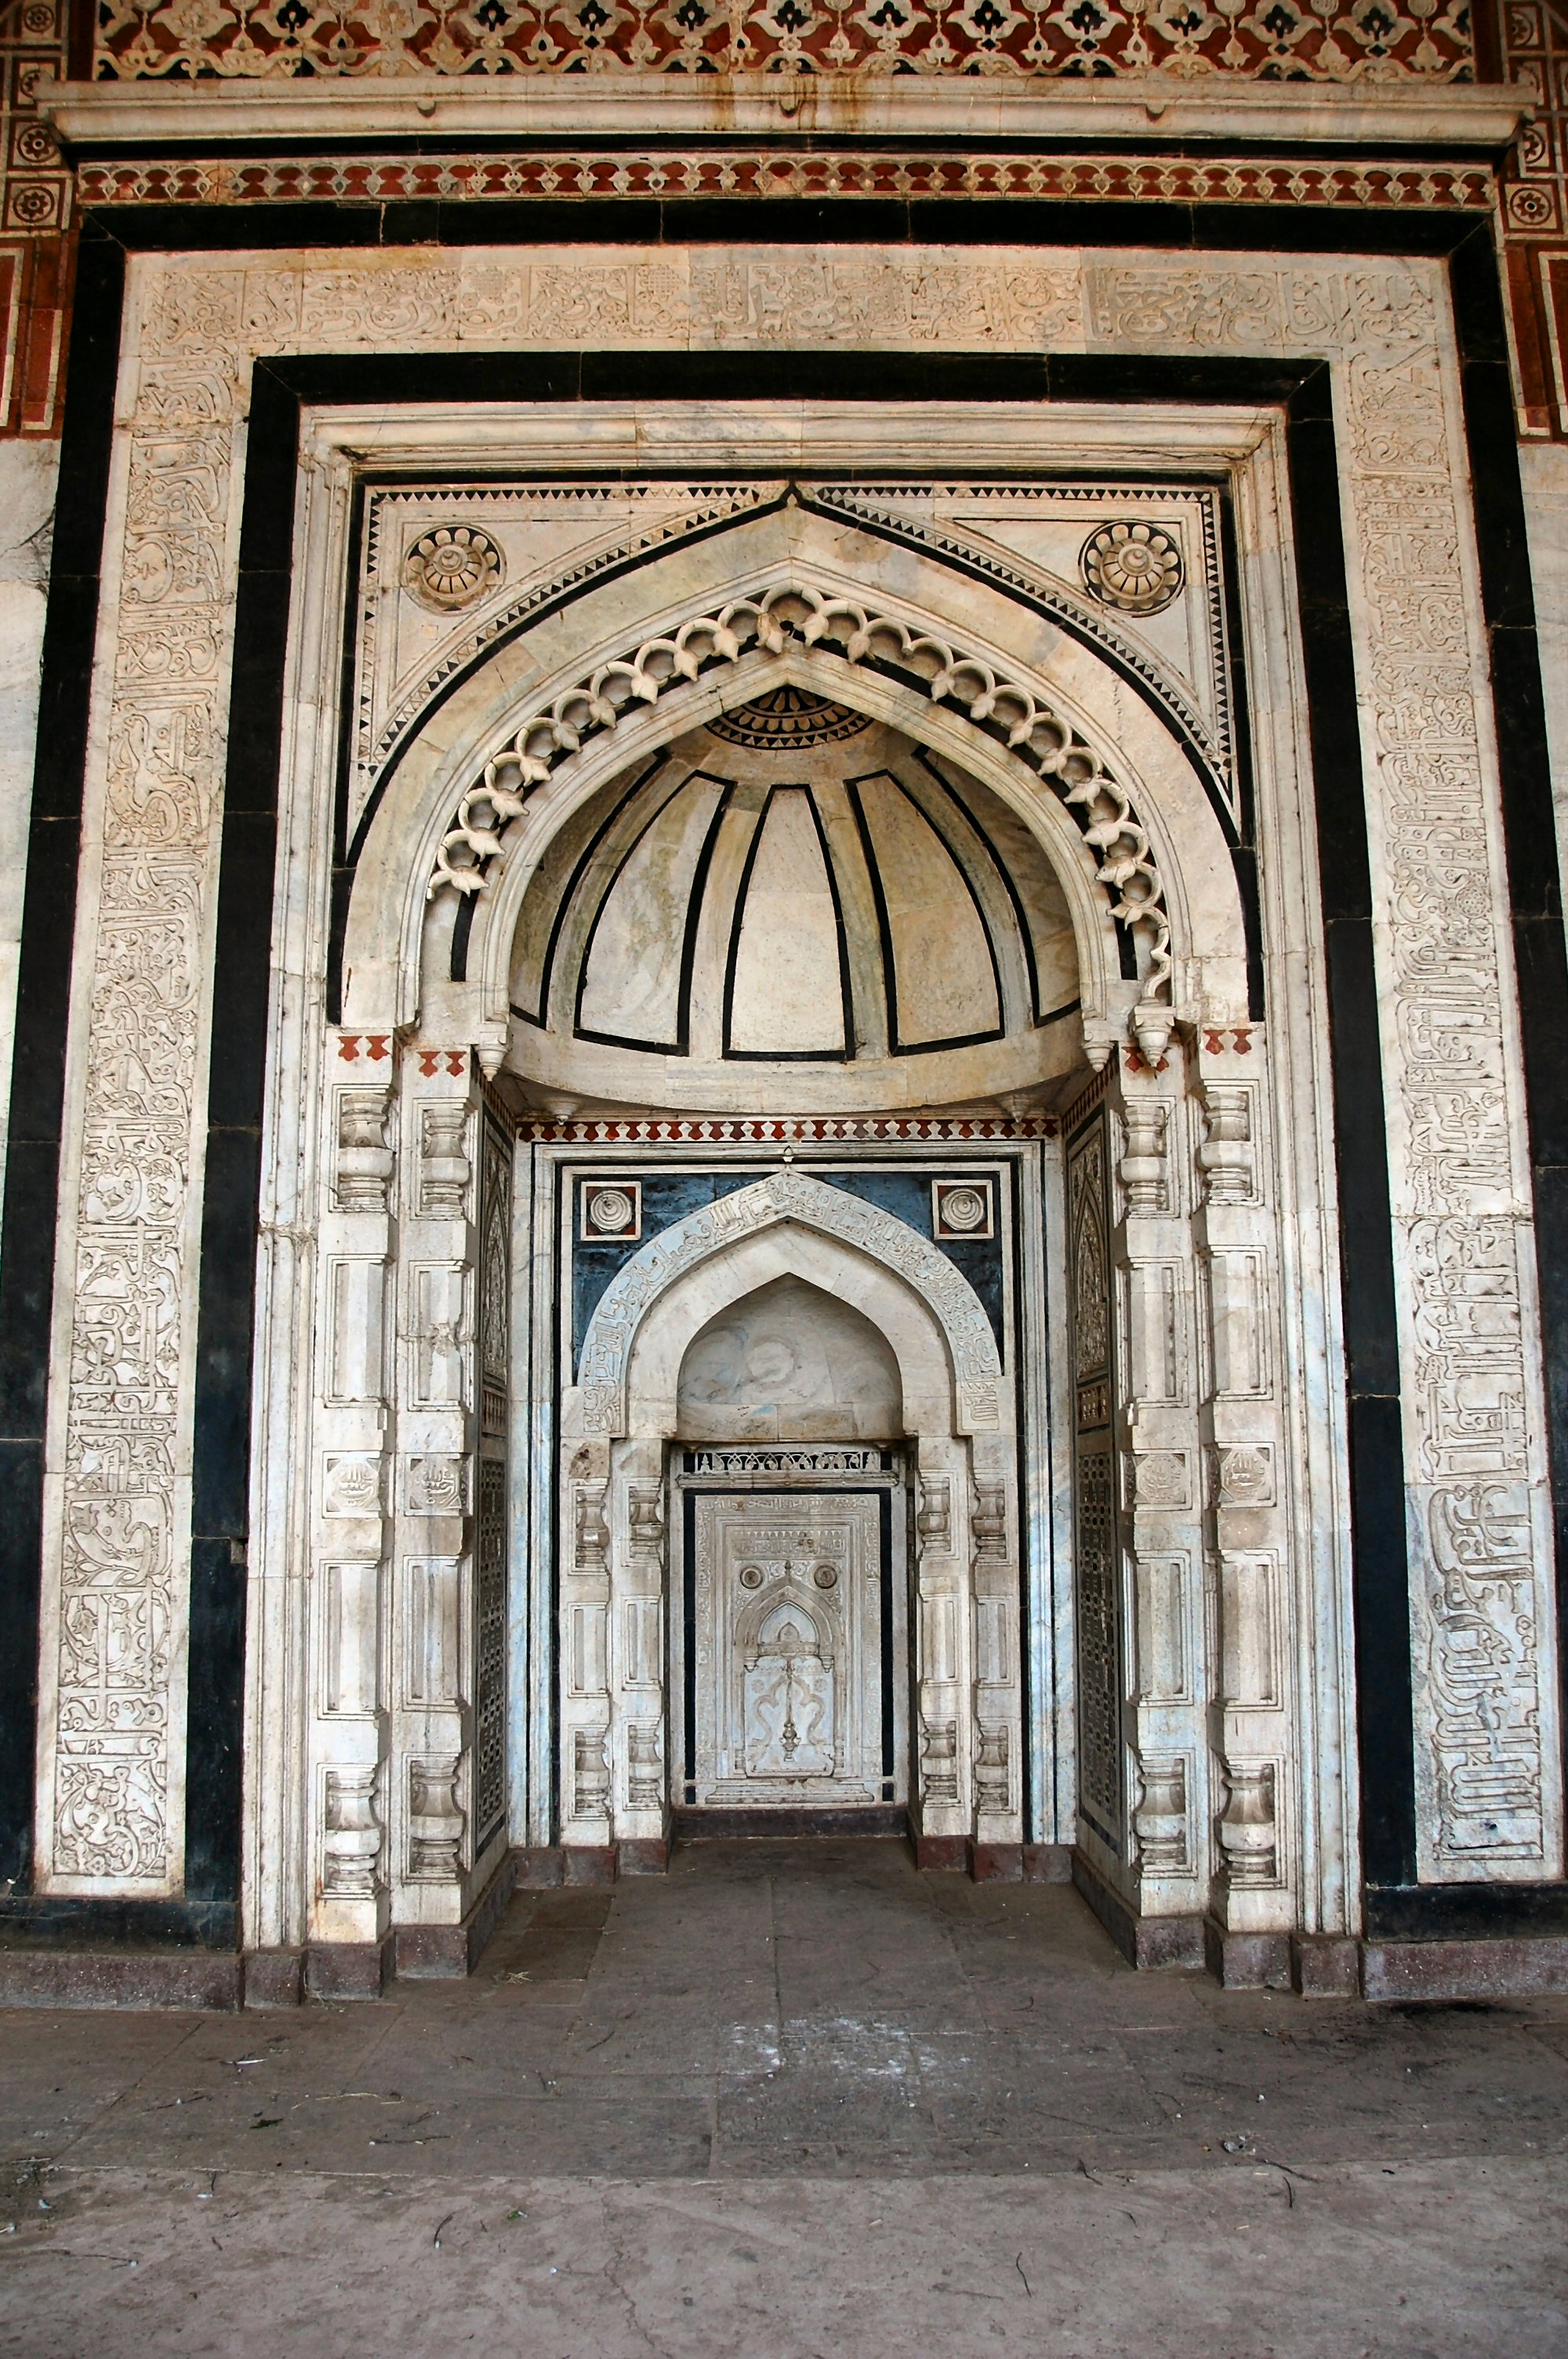 Mihrab in Qila Kuhna Masjid, Purana Qila, Delhi